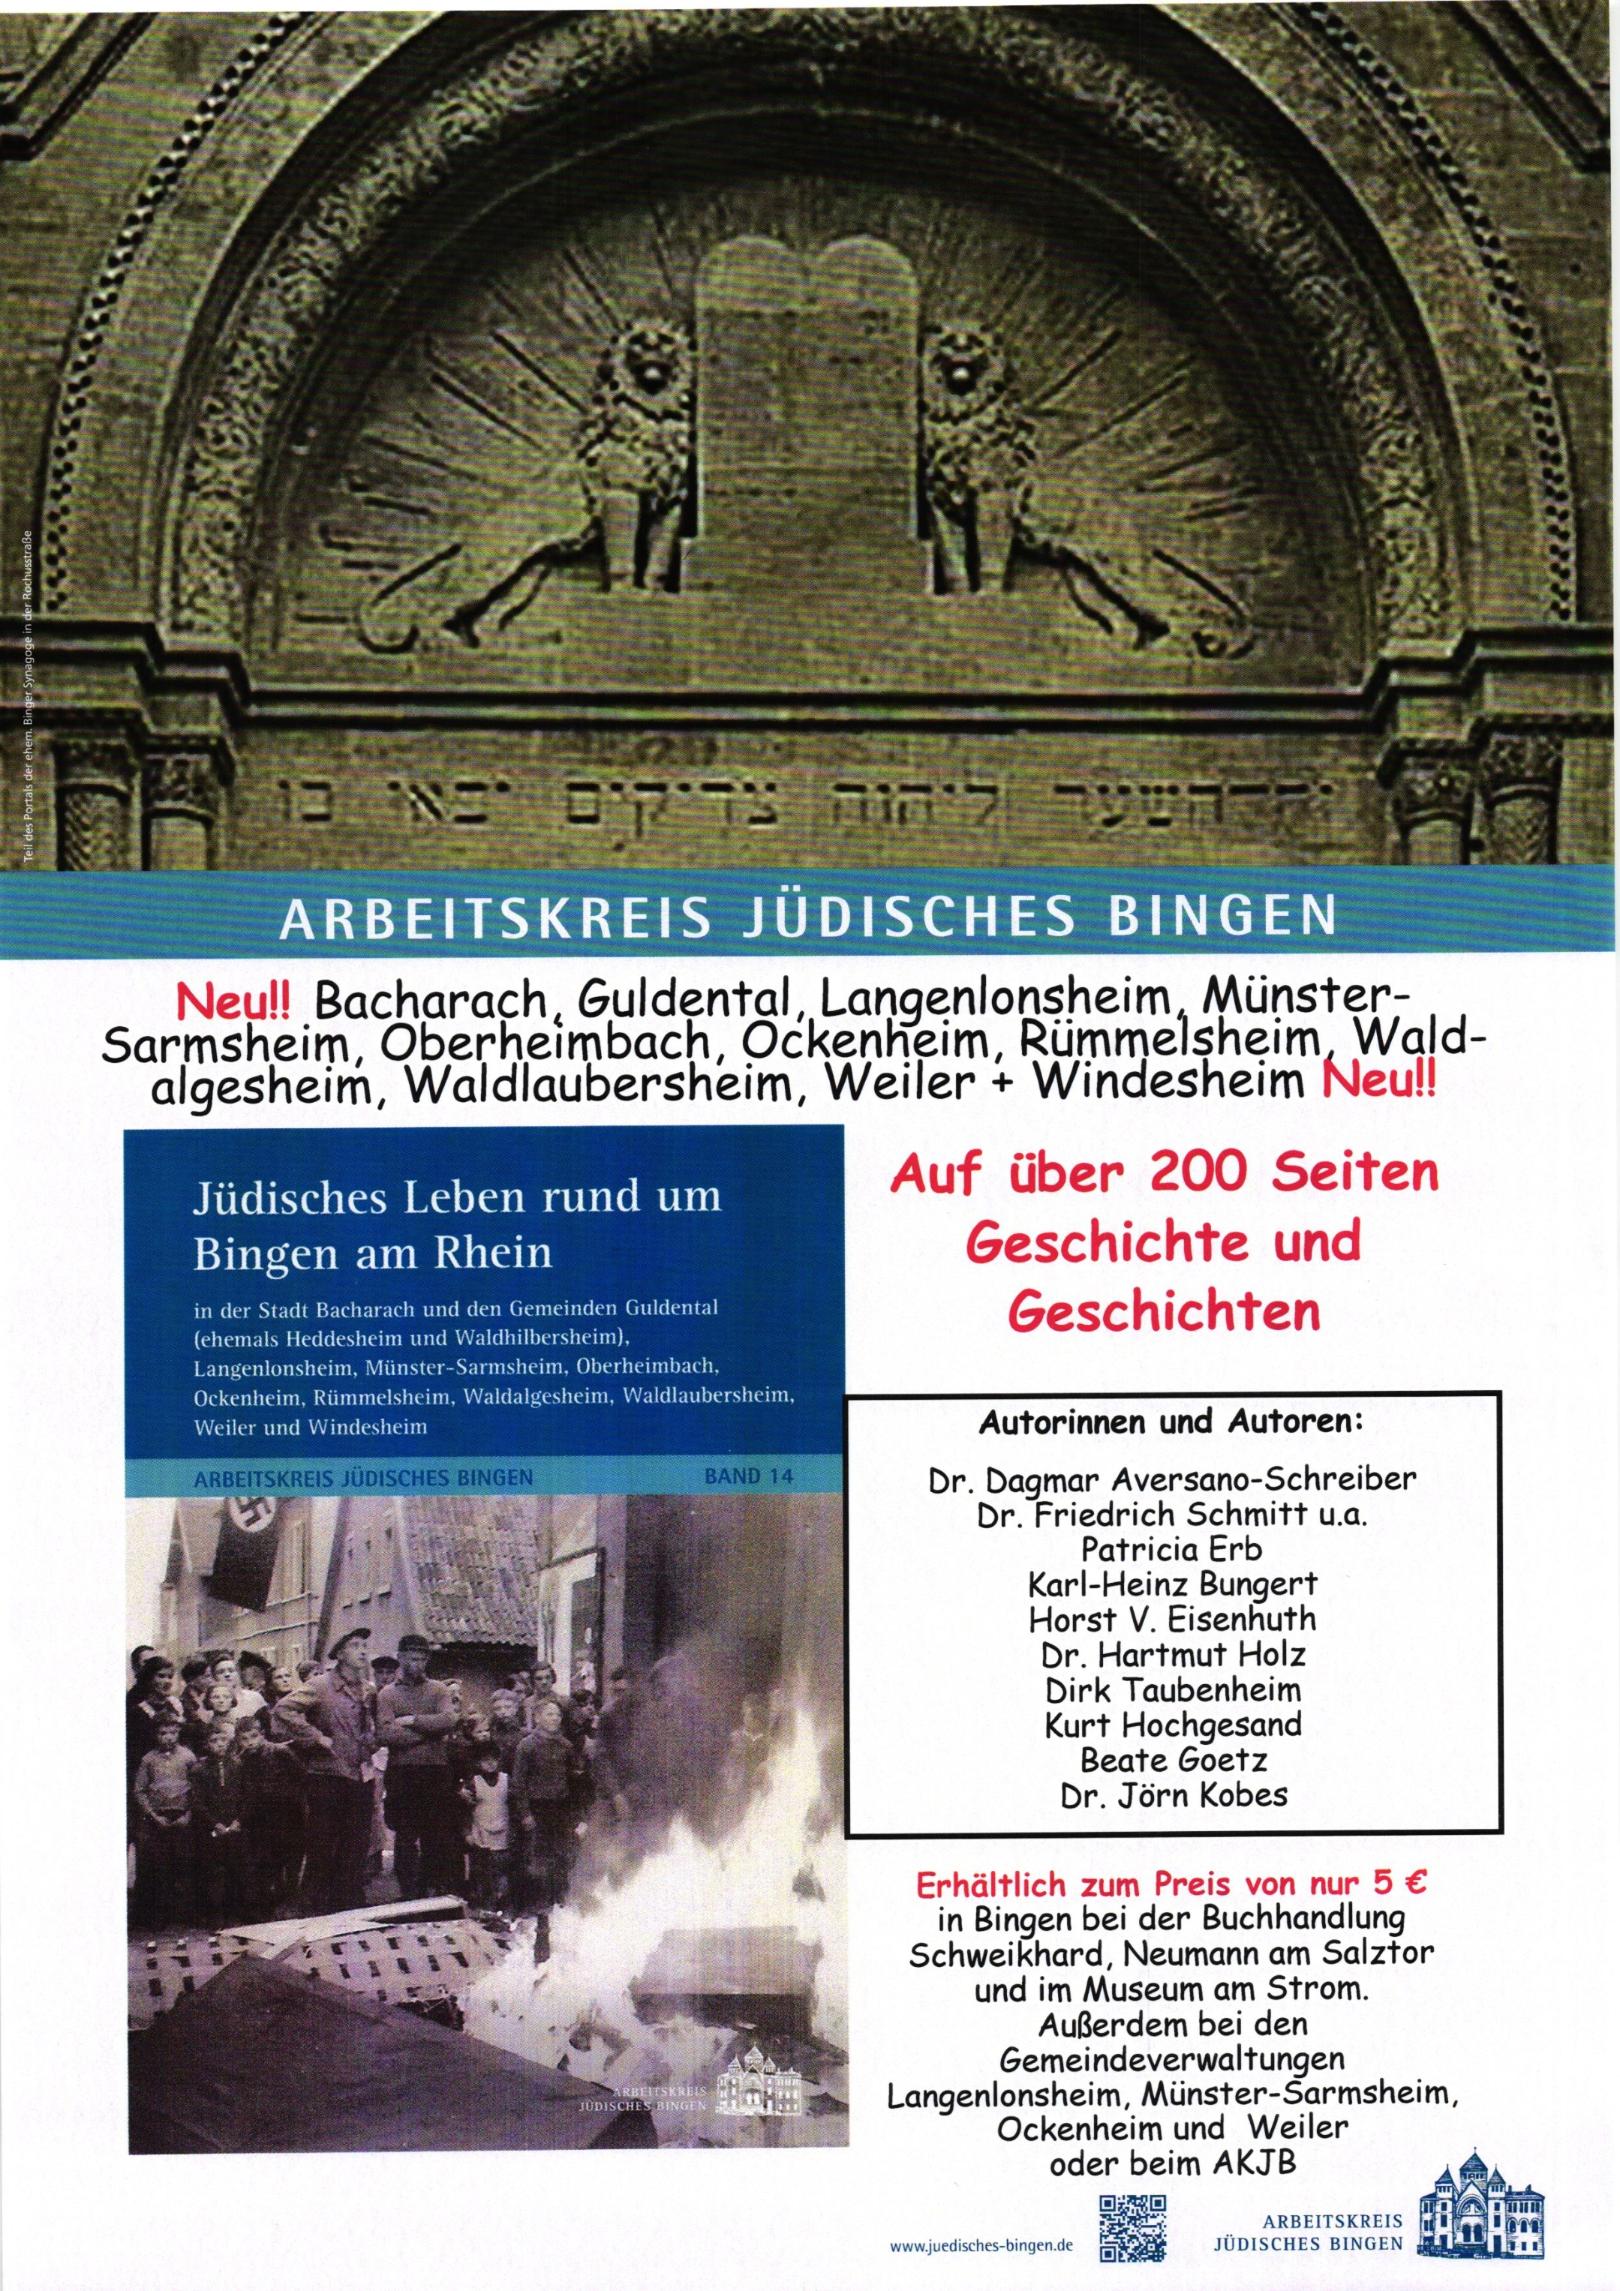 AKJB_Band 14_Plakat 001 (c) Arbeitskreis Jüdisches Bingen